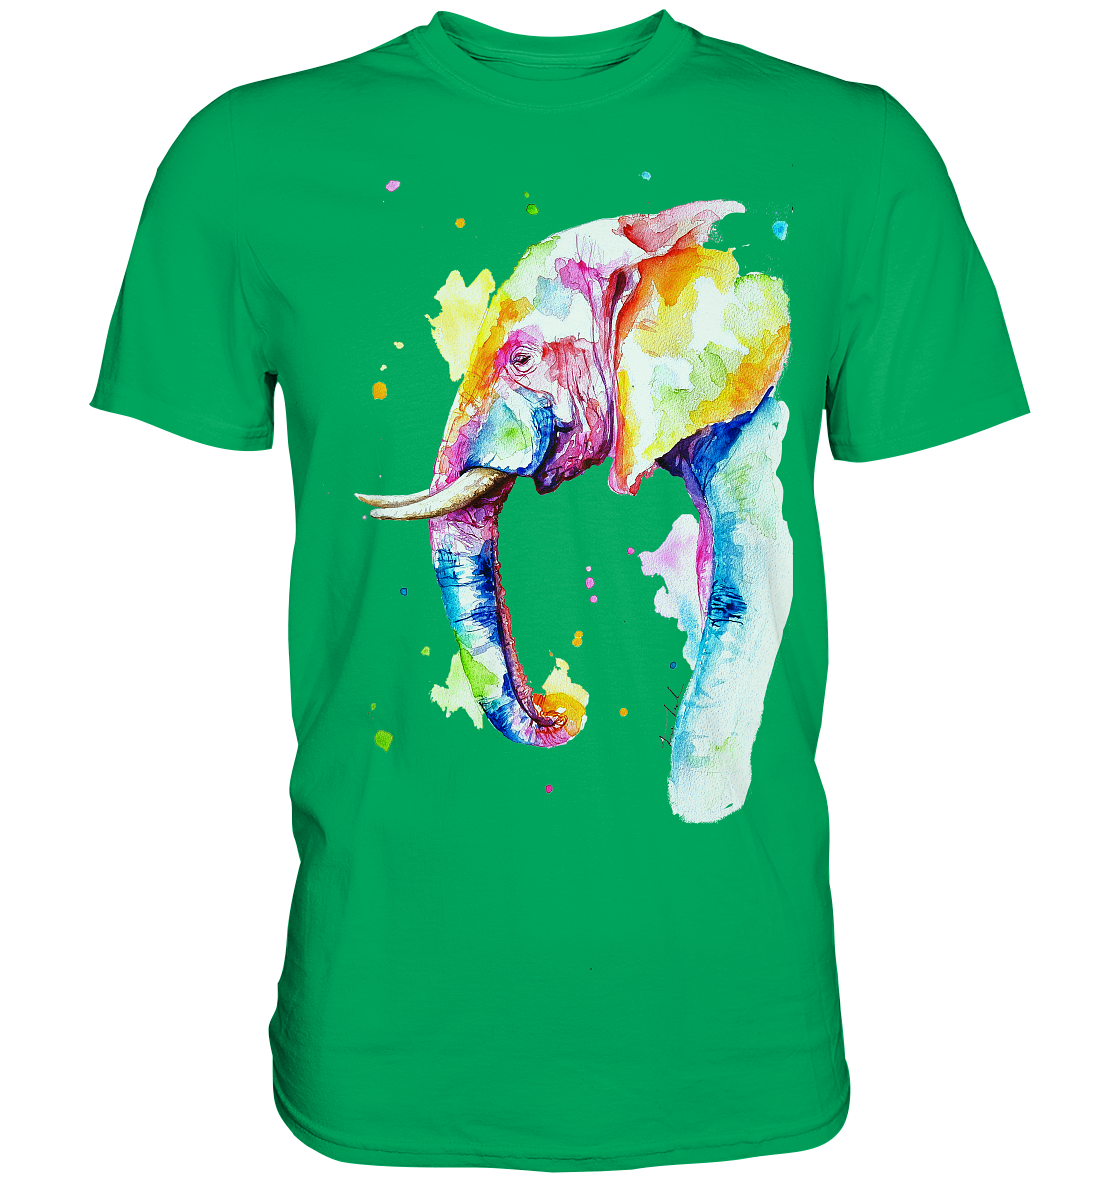 Bunter Elefant - Premium Shirt